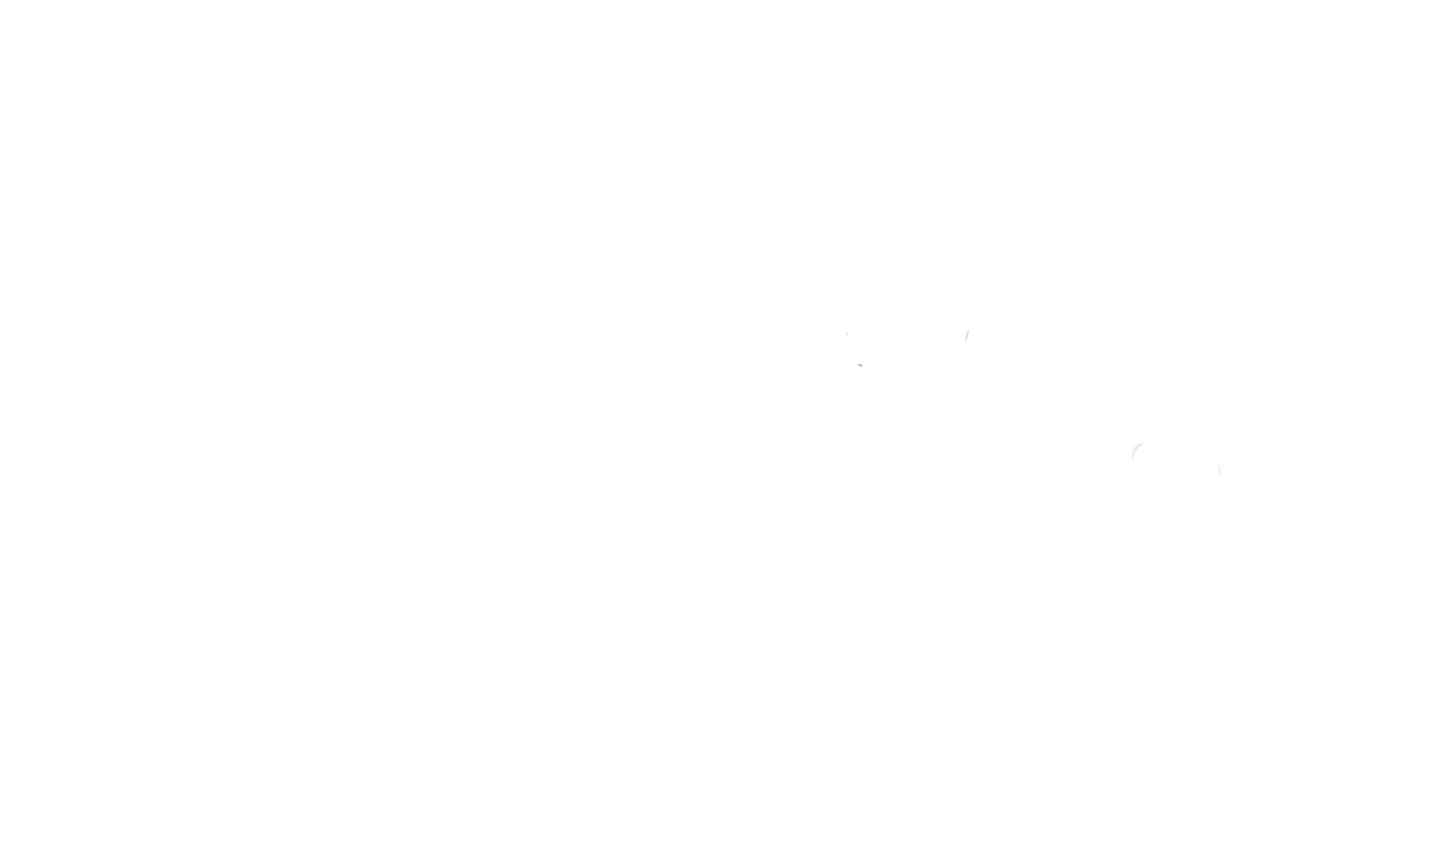 Leggy2fast logo